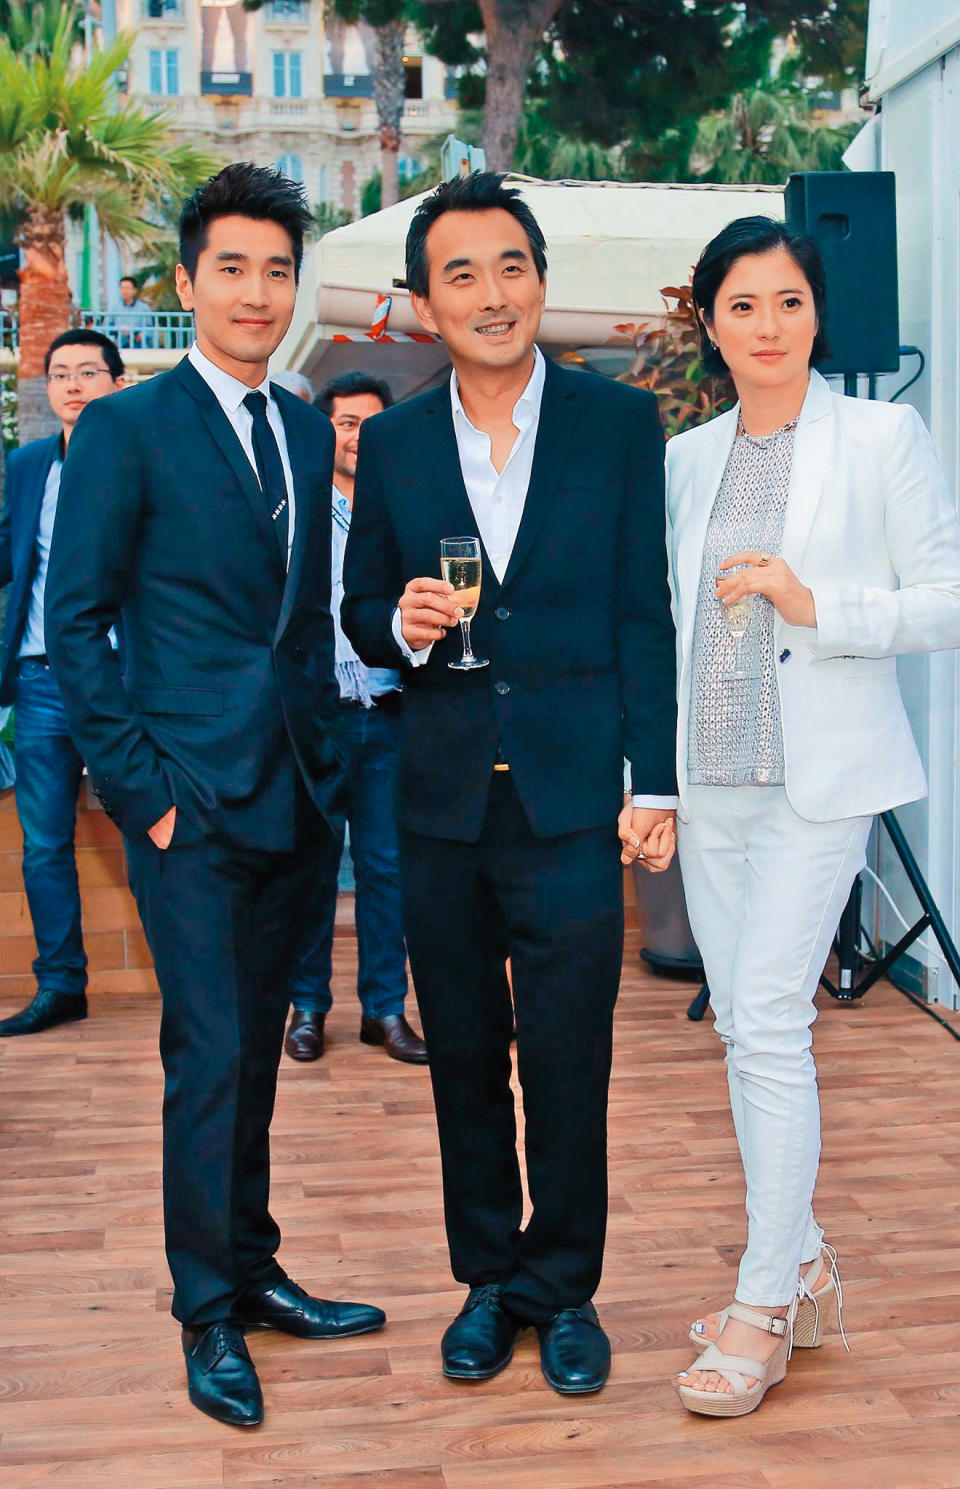 《痞子英雄》是蔡岳勳（中）的代表作、當時他跟老婆于小惠（右）精心栽培戲中的男主角趙又廷（左）。